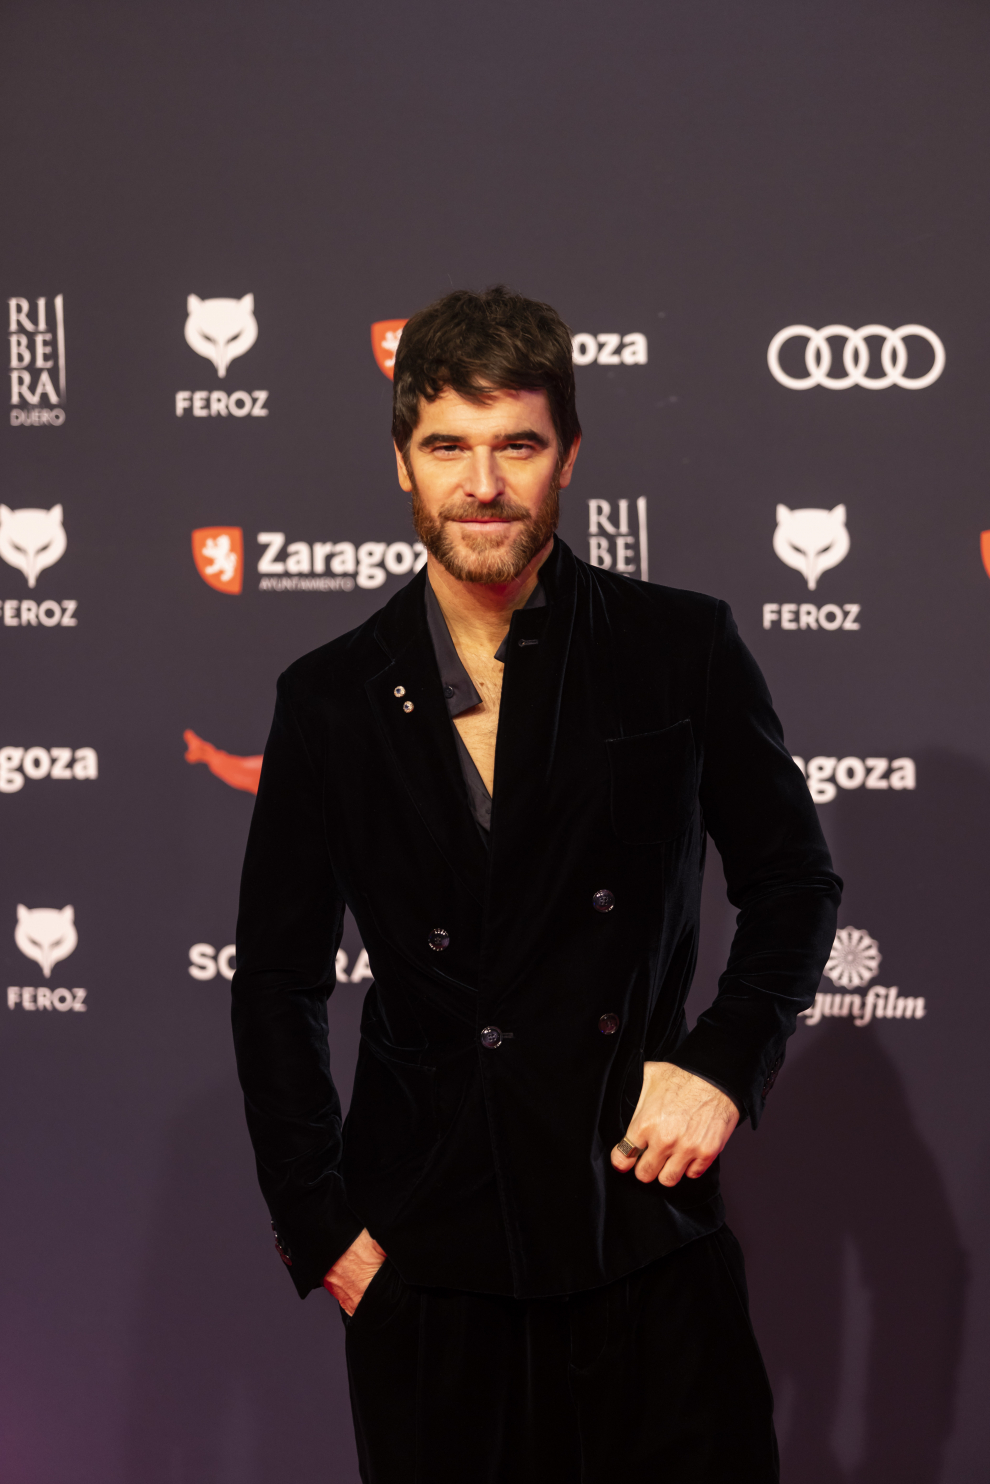 Fotos de la gala de los Premios Feroz 2023 en Zaragoza